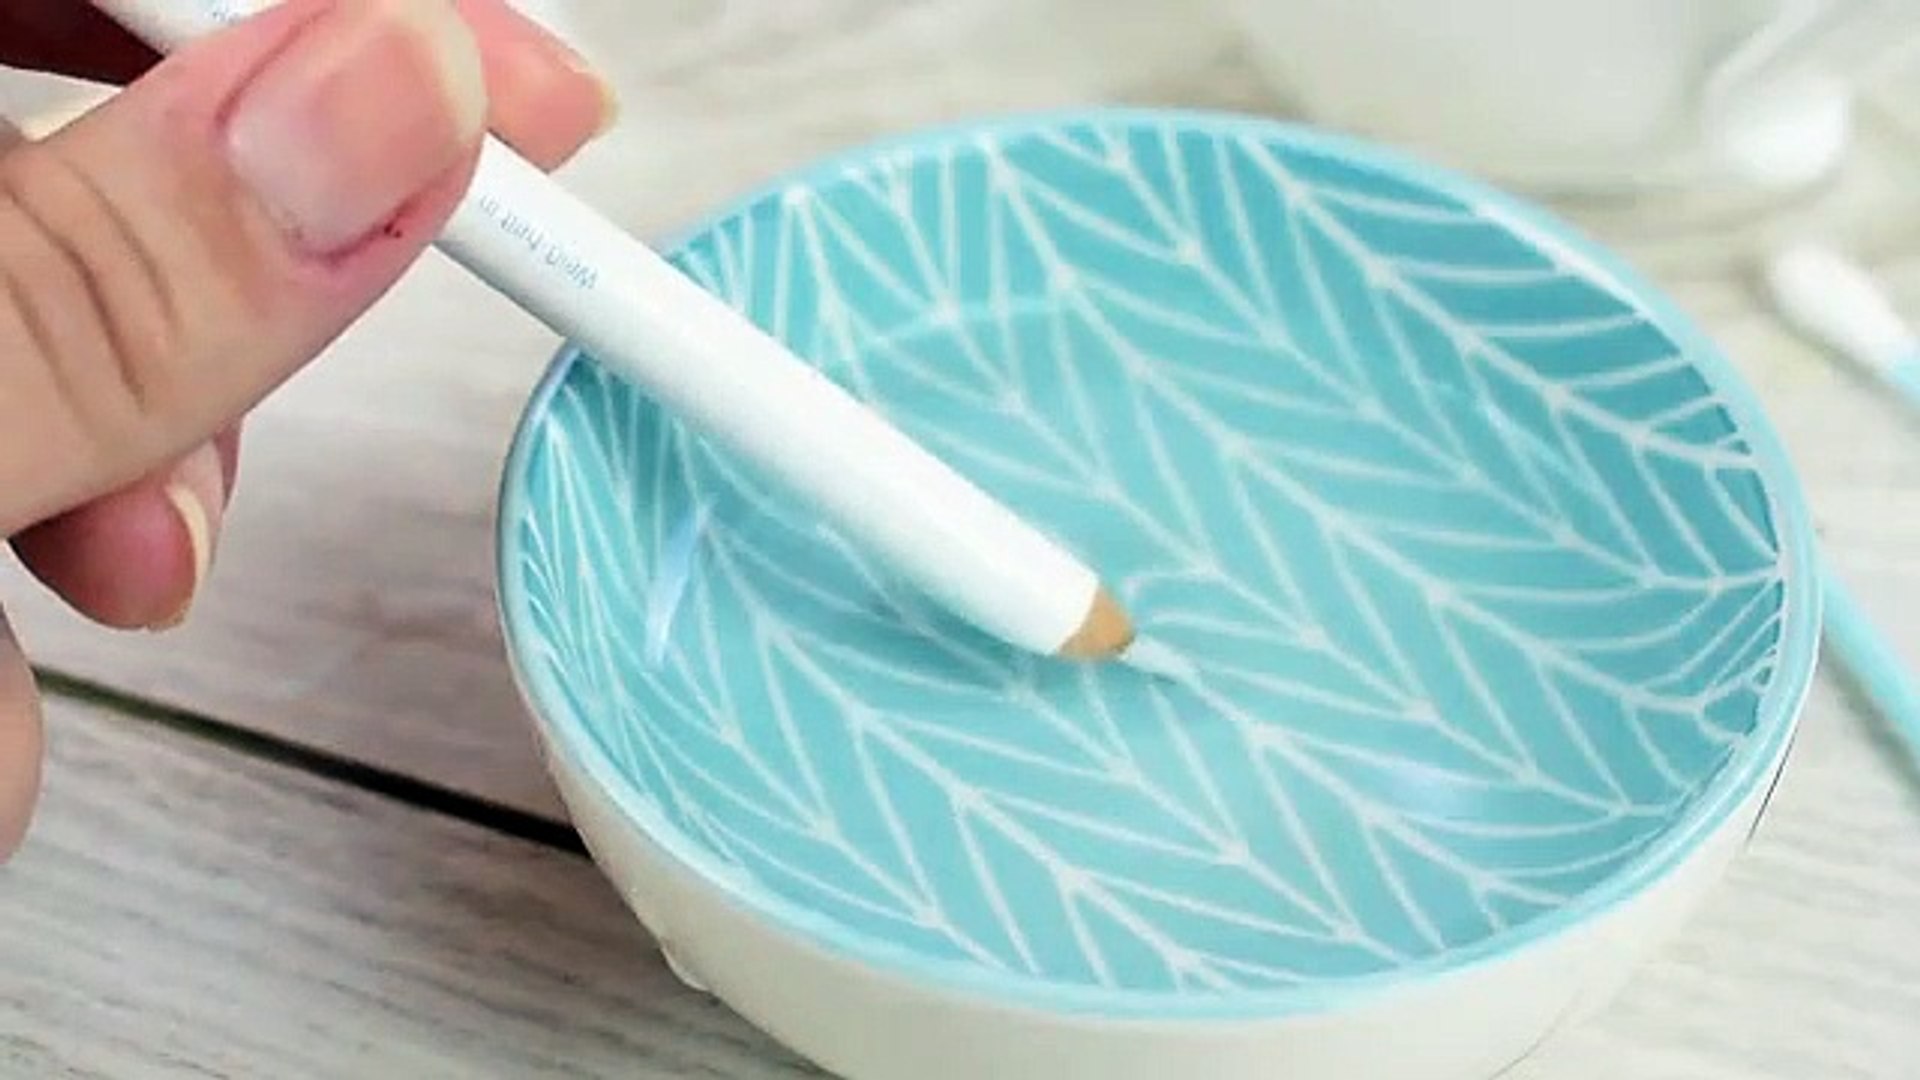 Beyaz Tırnak Kalemi Nasıl Kullanılır? - Dailymotion Video